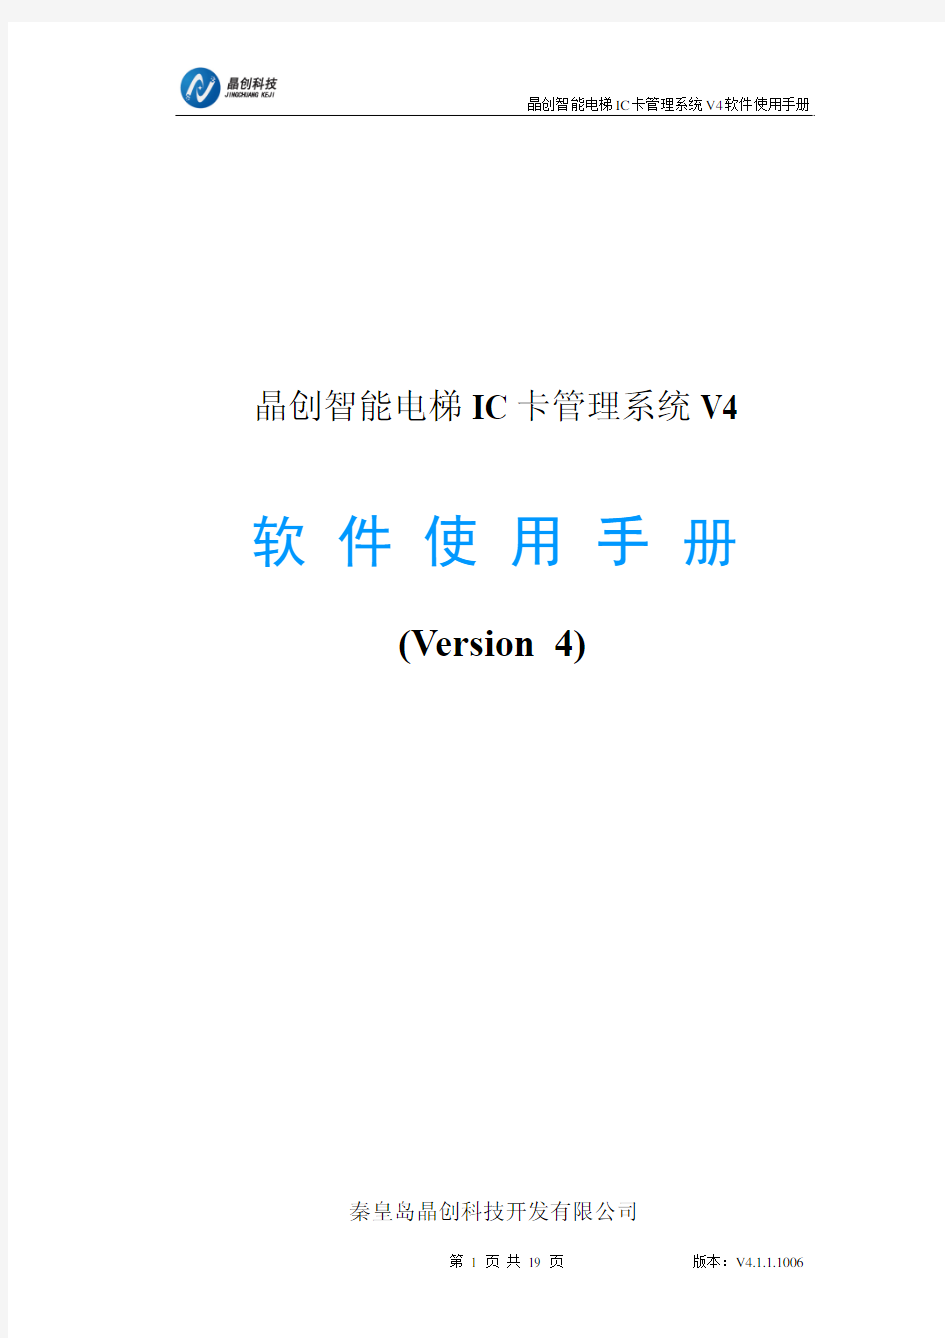 晶创智能电梯IC卡管理系统软件说明书V4.1